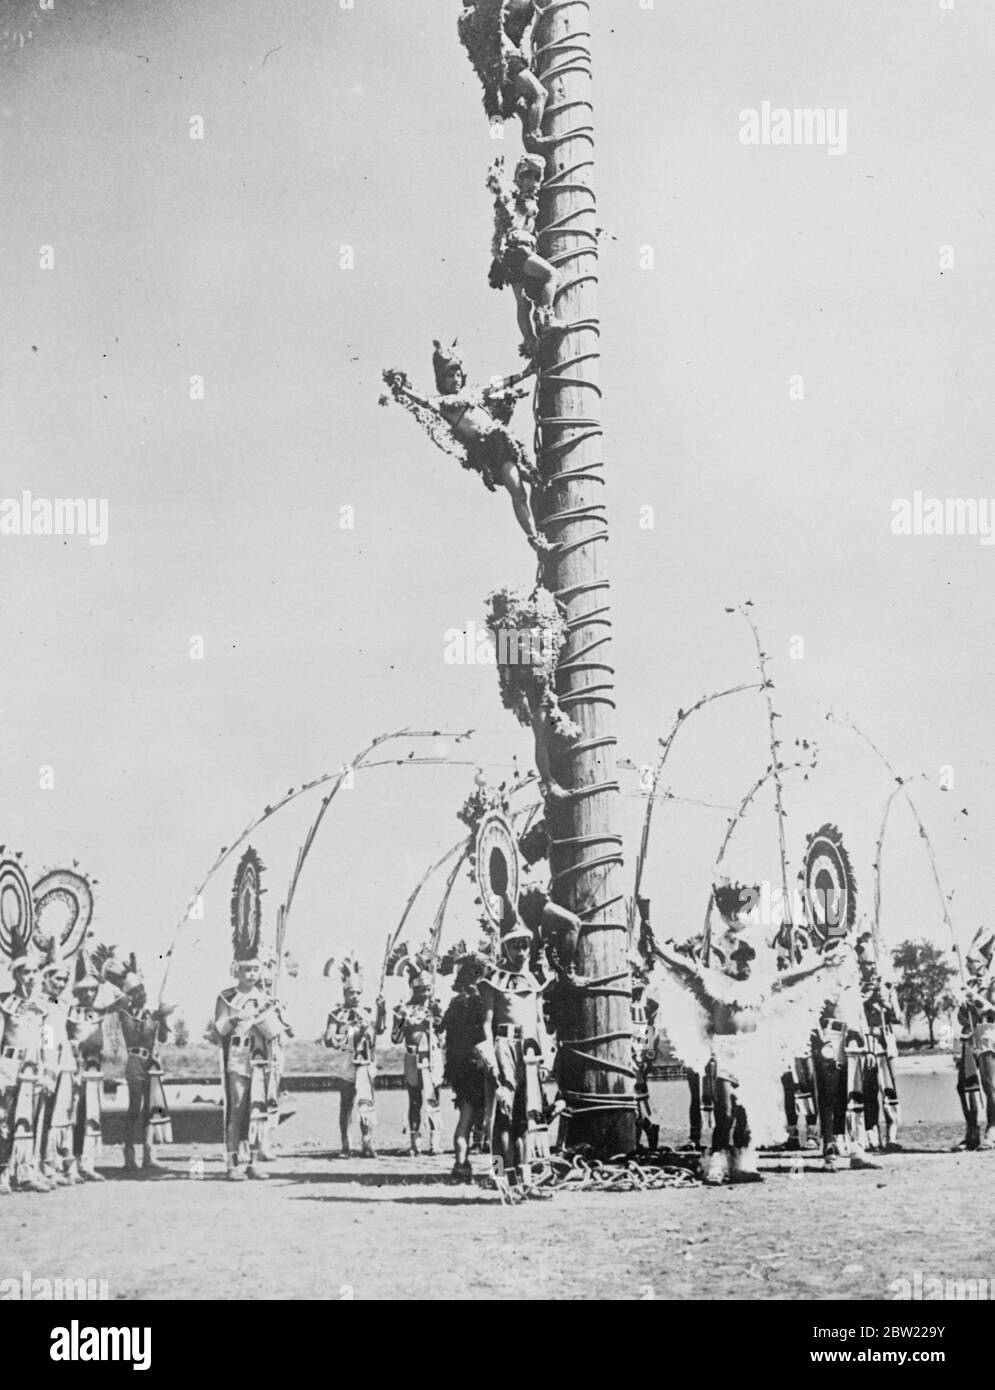 [Original Caption] die seltsam gegarten Indianer klettern die Umfrage für den Tanz. In einer spektakulären Ausstellung im Charter Jubilee Festival in Chicago, die von einer Reihe von Indianern aus Pahuatlin, Mexiko, gegeben wurde. Sechs Indianer, die mythische Figuren darstellen, klettern auf die Spitze des 50 Fuß hohen Pfeils und tanzen auf einer kleinen Drehplattform. September 1937. Stockfoto